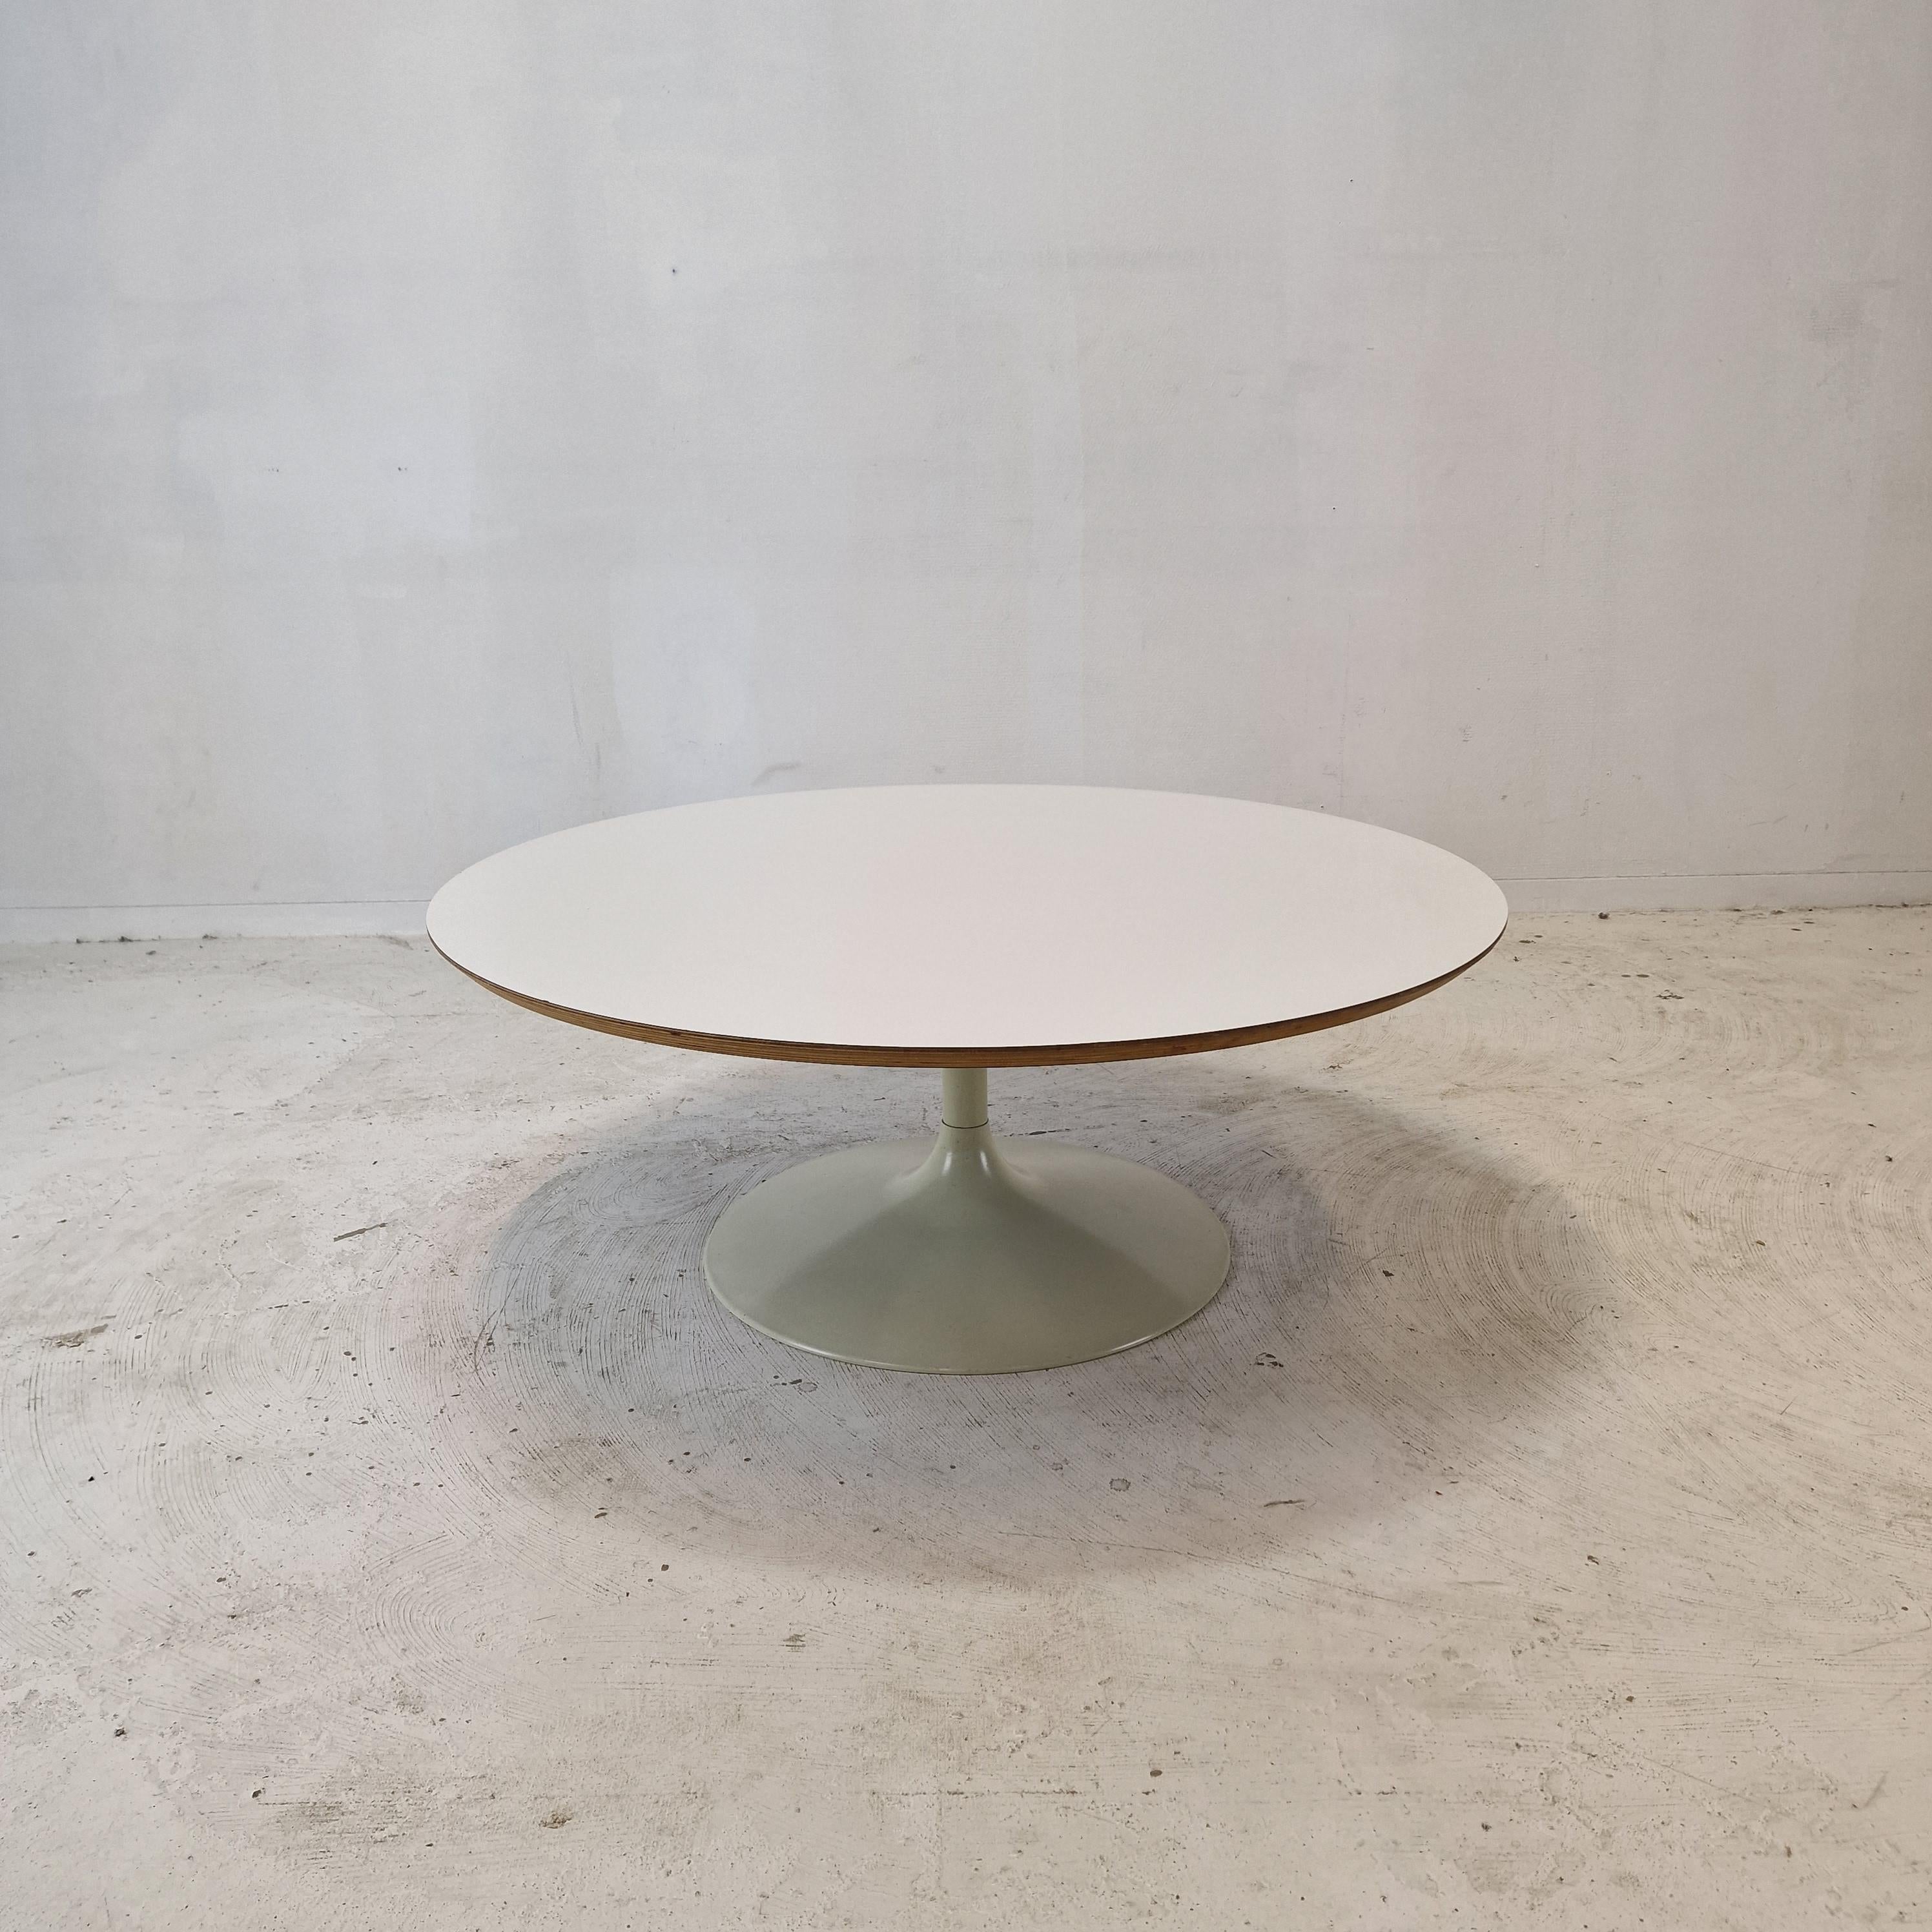 Très belle table basse ronde, conçue par Pierre Paulin dans les années 70. 
Le nom de la table est 